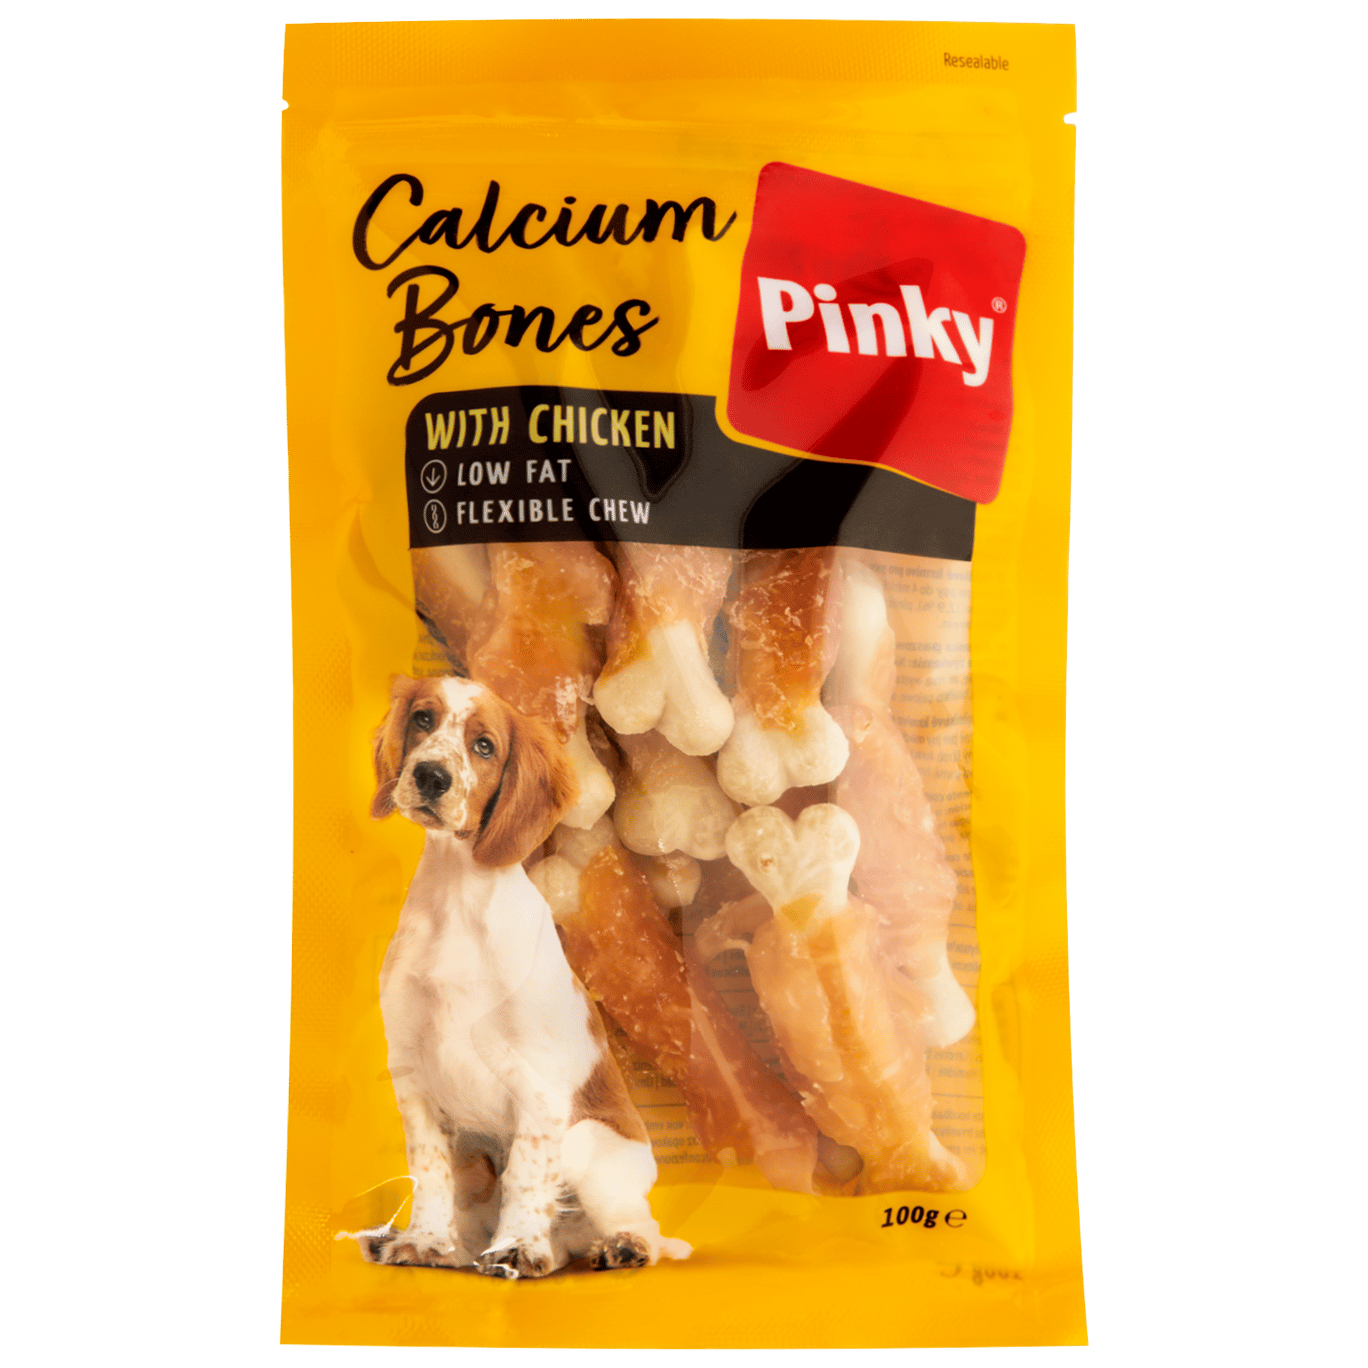 Aperitivos para perros Pinky Calcium Bones